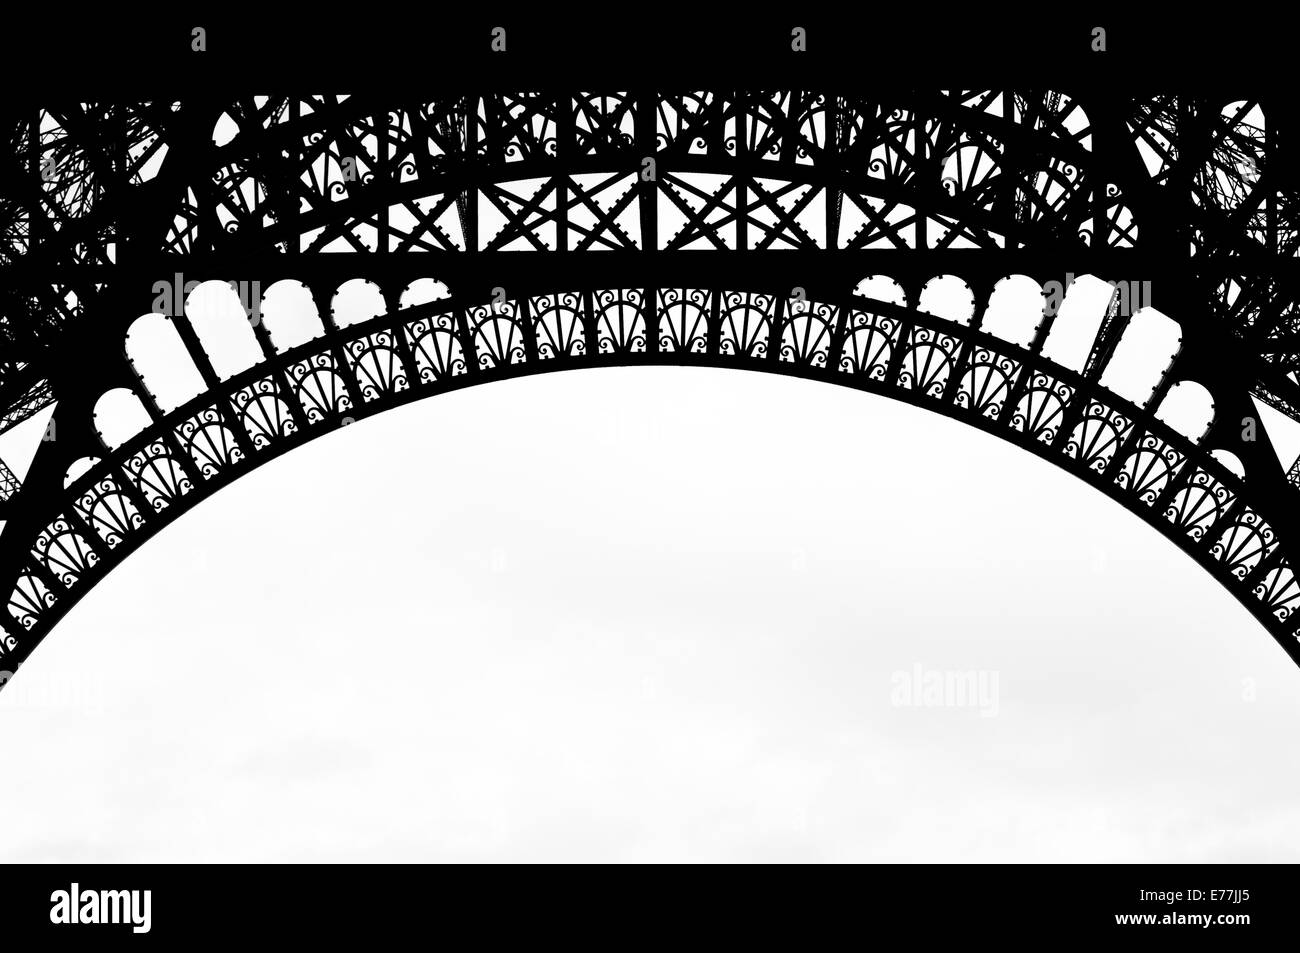 Une photo en noir et blanc du treillis/oeuvres en fer de la Tour Eiffel, Paris, France. Banque D'Images